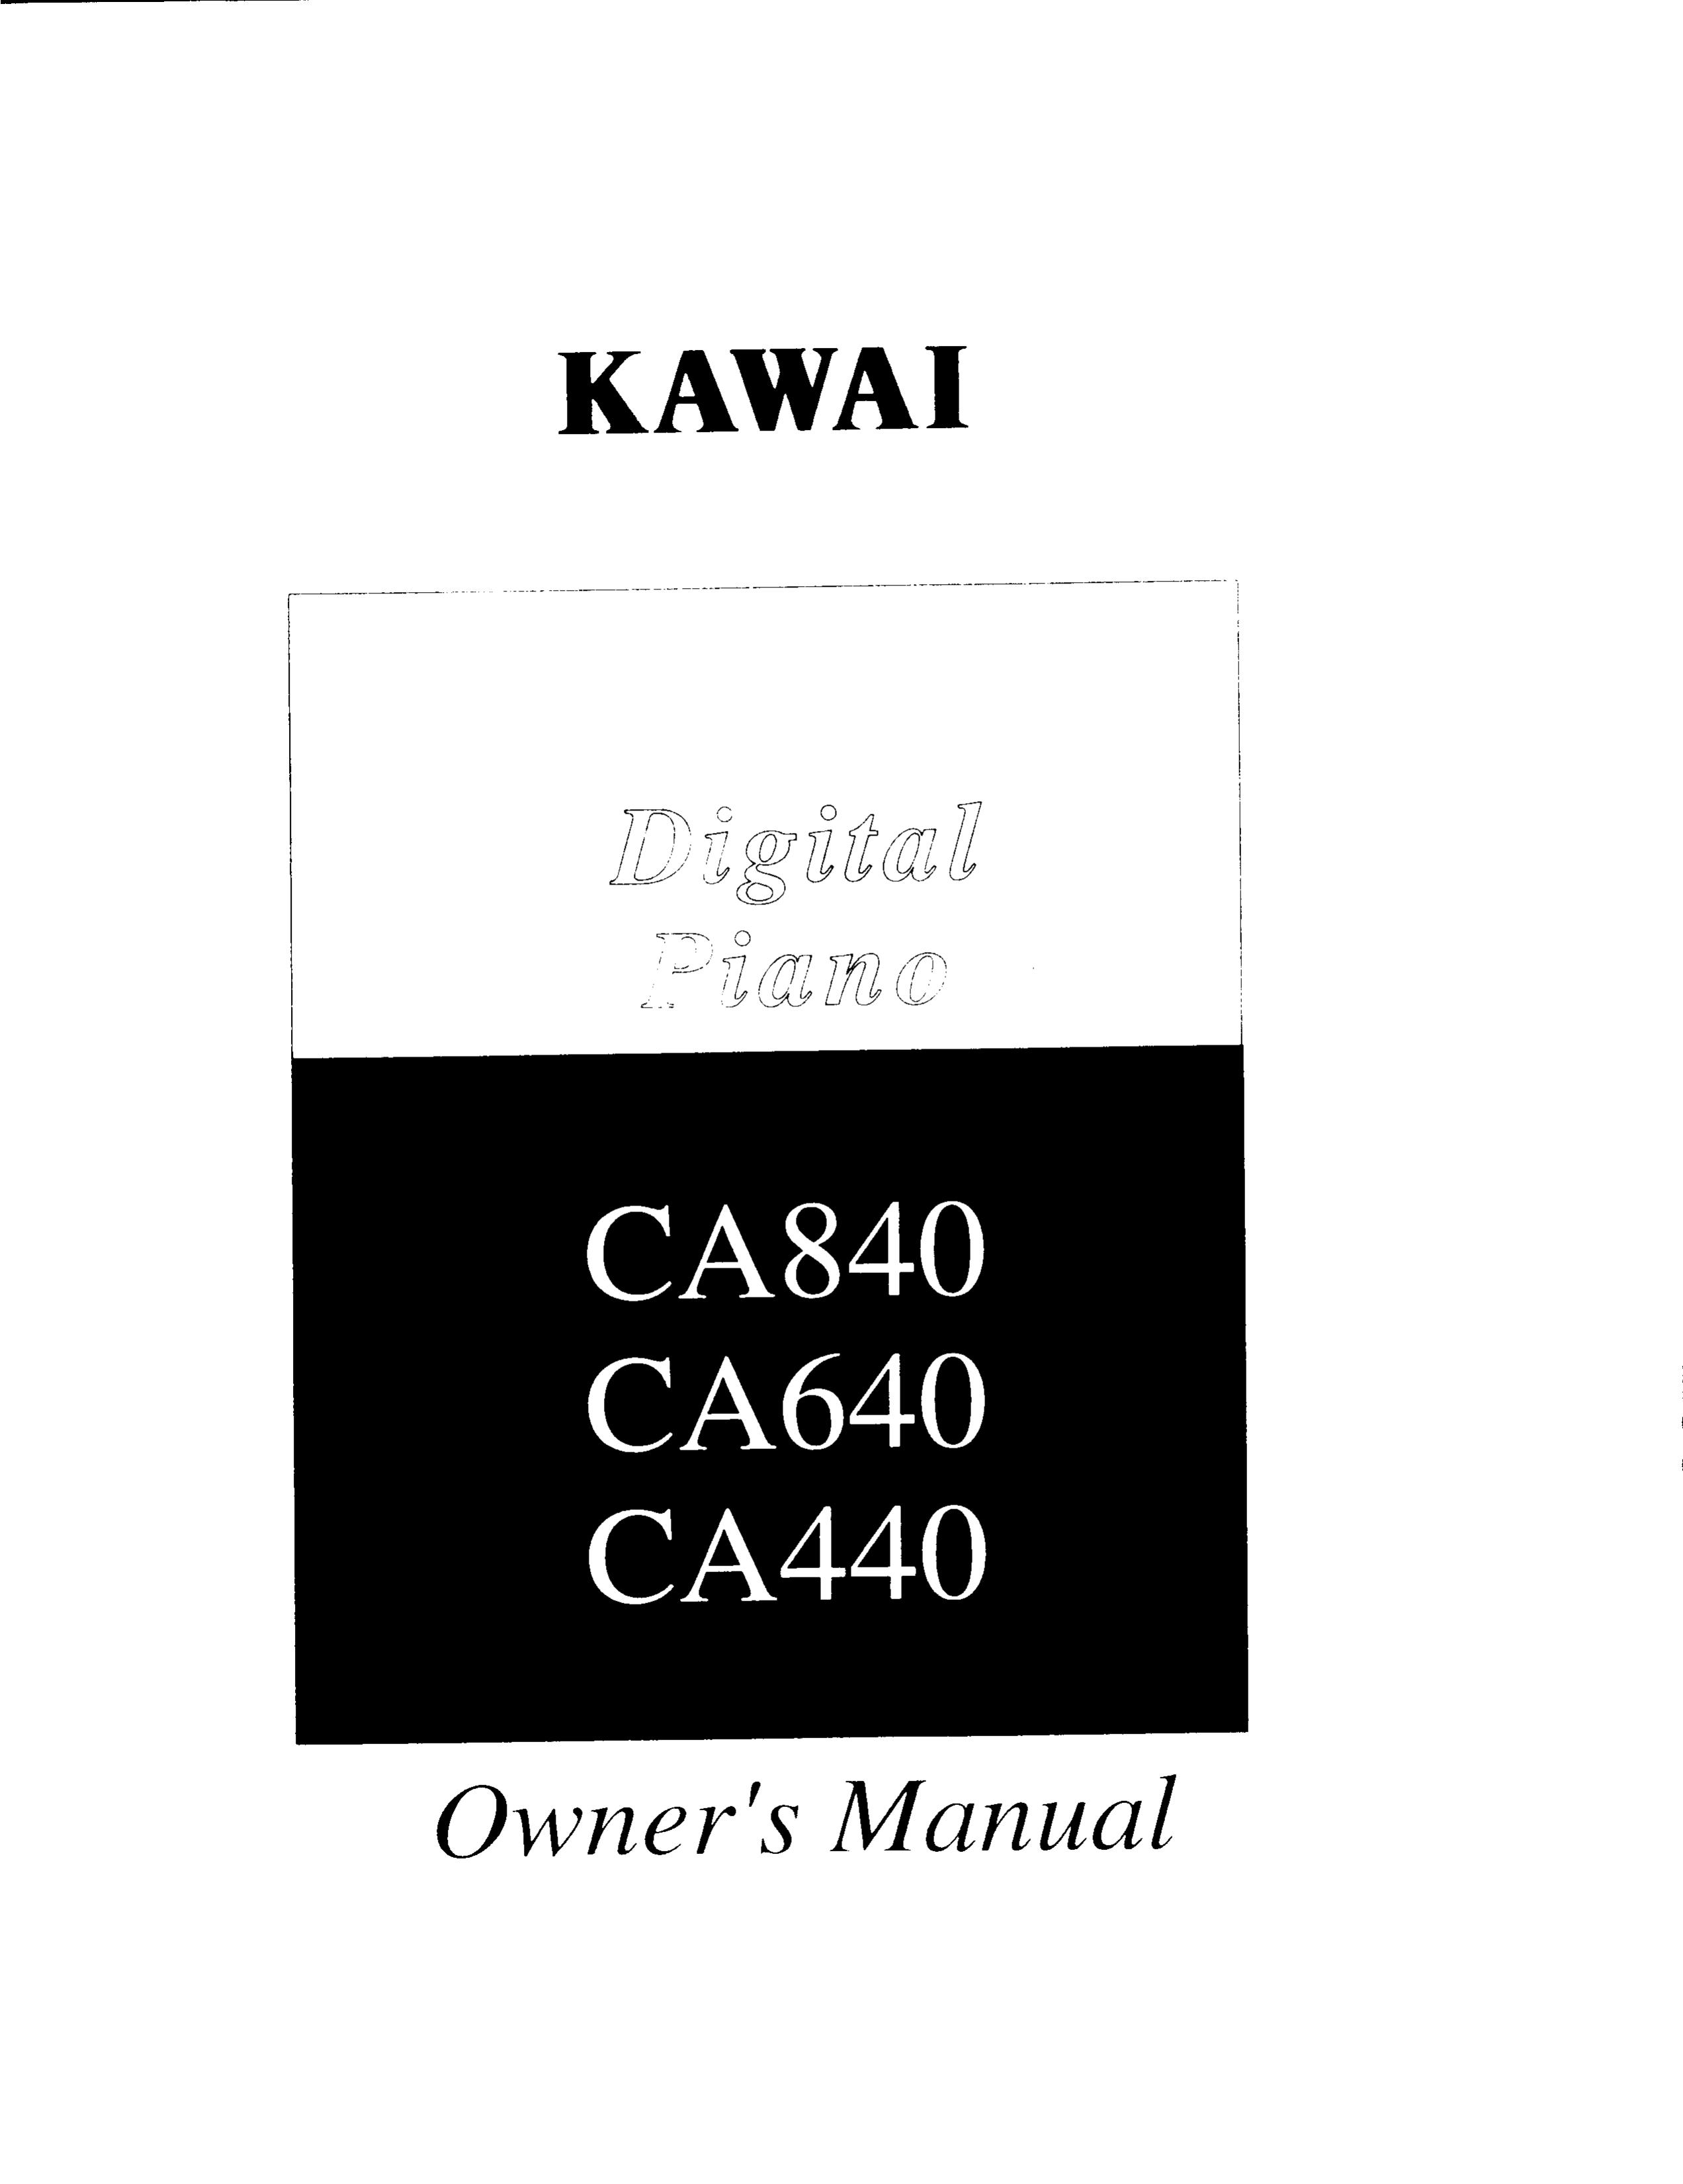 Kawai CA840 Electronic Keyboard User Manual